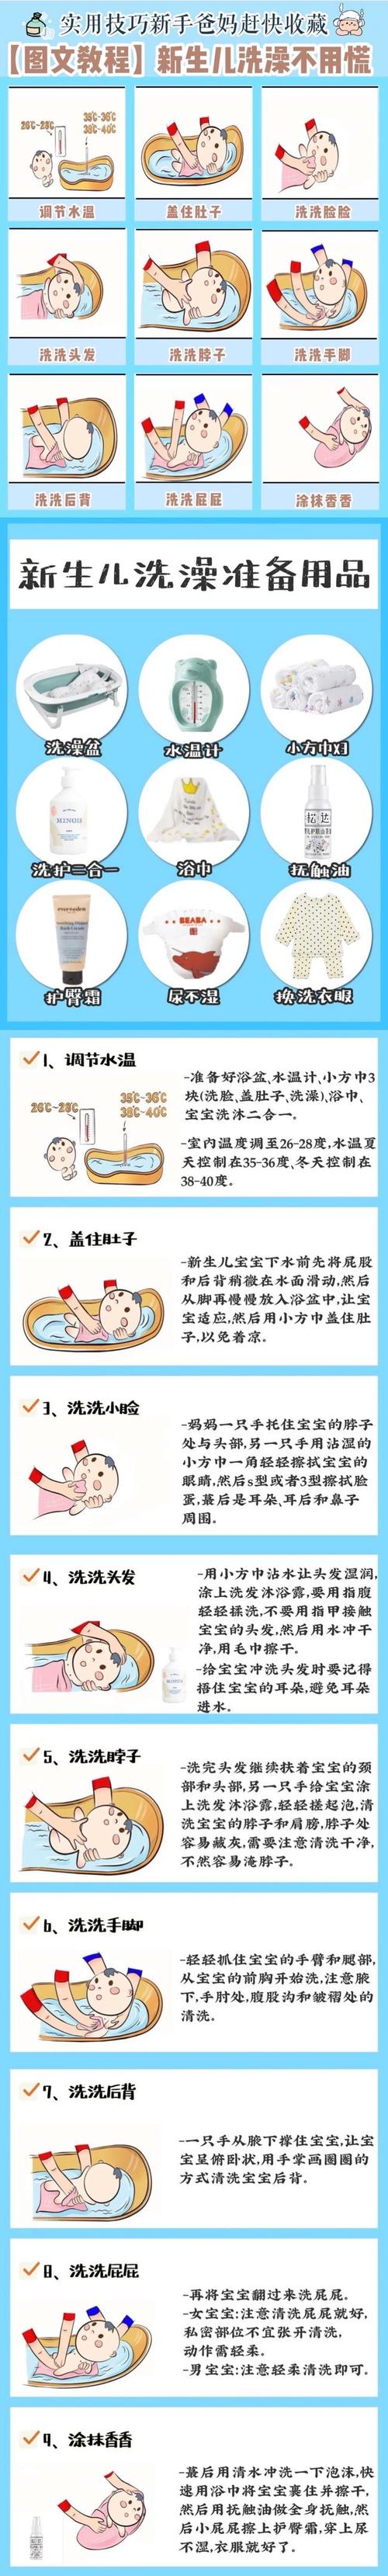 中医认为最佳洗澡时间 2002广东孟荣钰精选文章